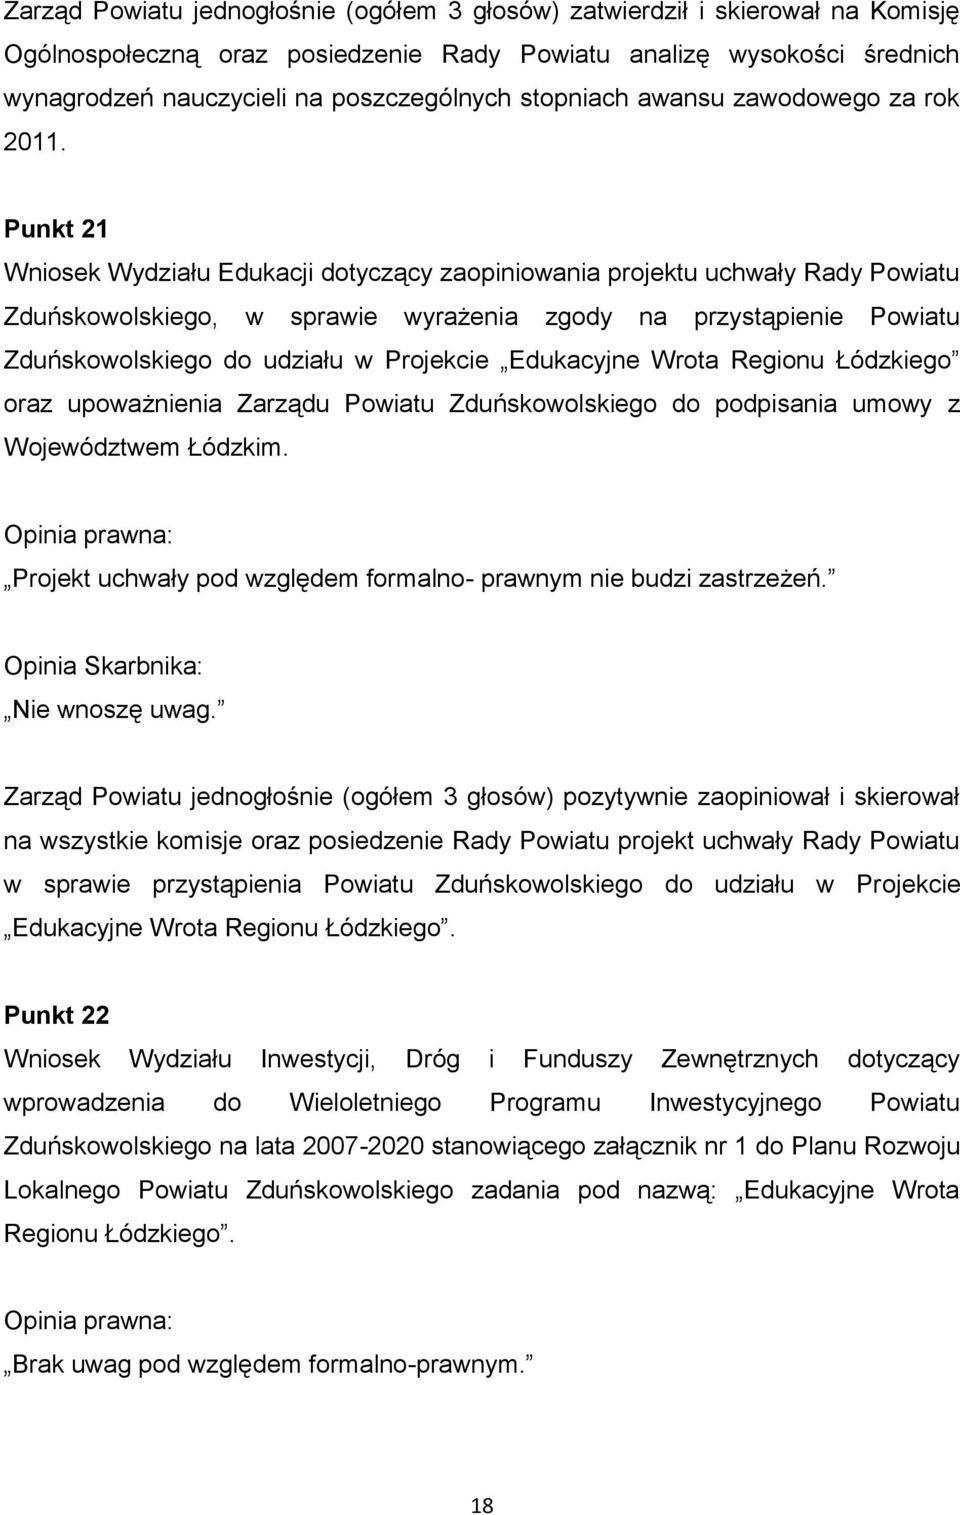 Punkt 21 Wniosek Wydziału Edukacji dotyczący zaopiniowania projektu uchwały Rady Powiatu Zduńskowolskiego, w sprawie wyrażenia zgody na przystąpienie Powiatu Zduńskowolskiego do udziału w Projekcie